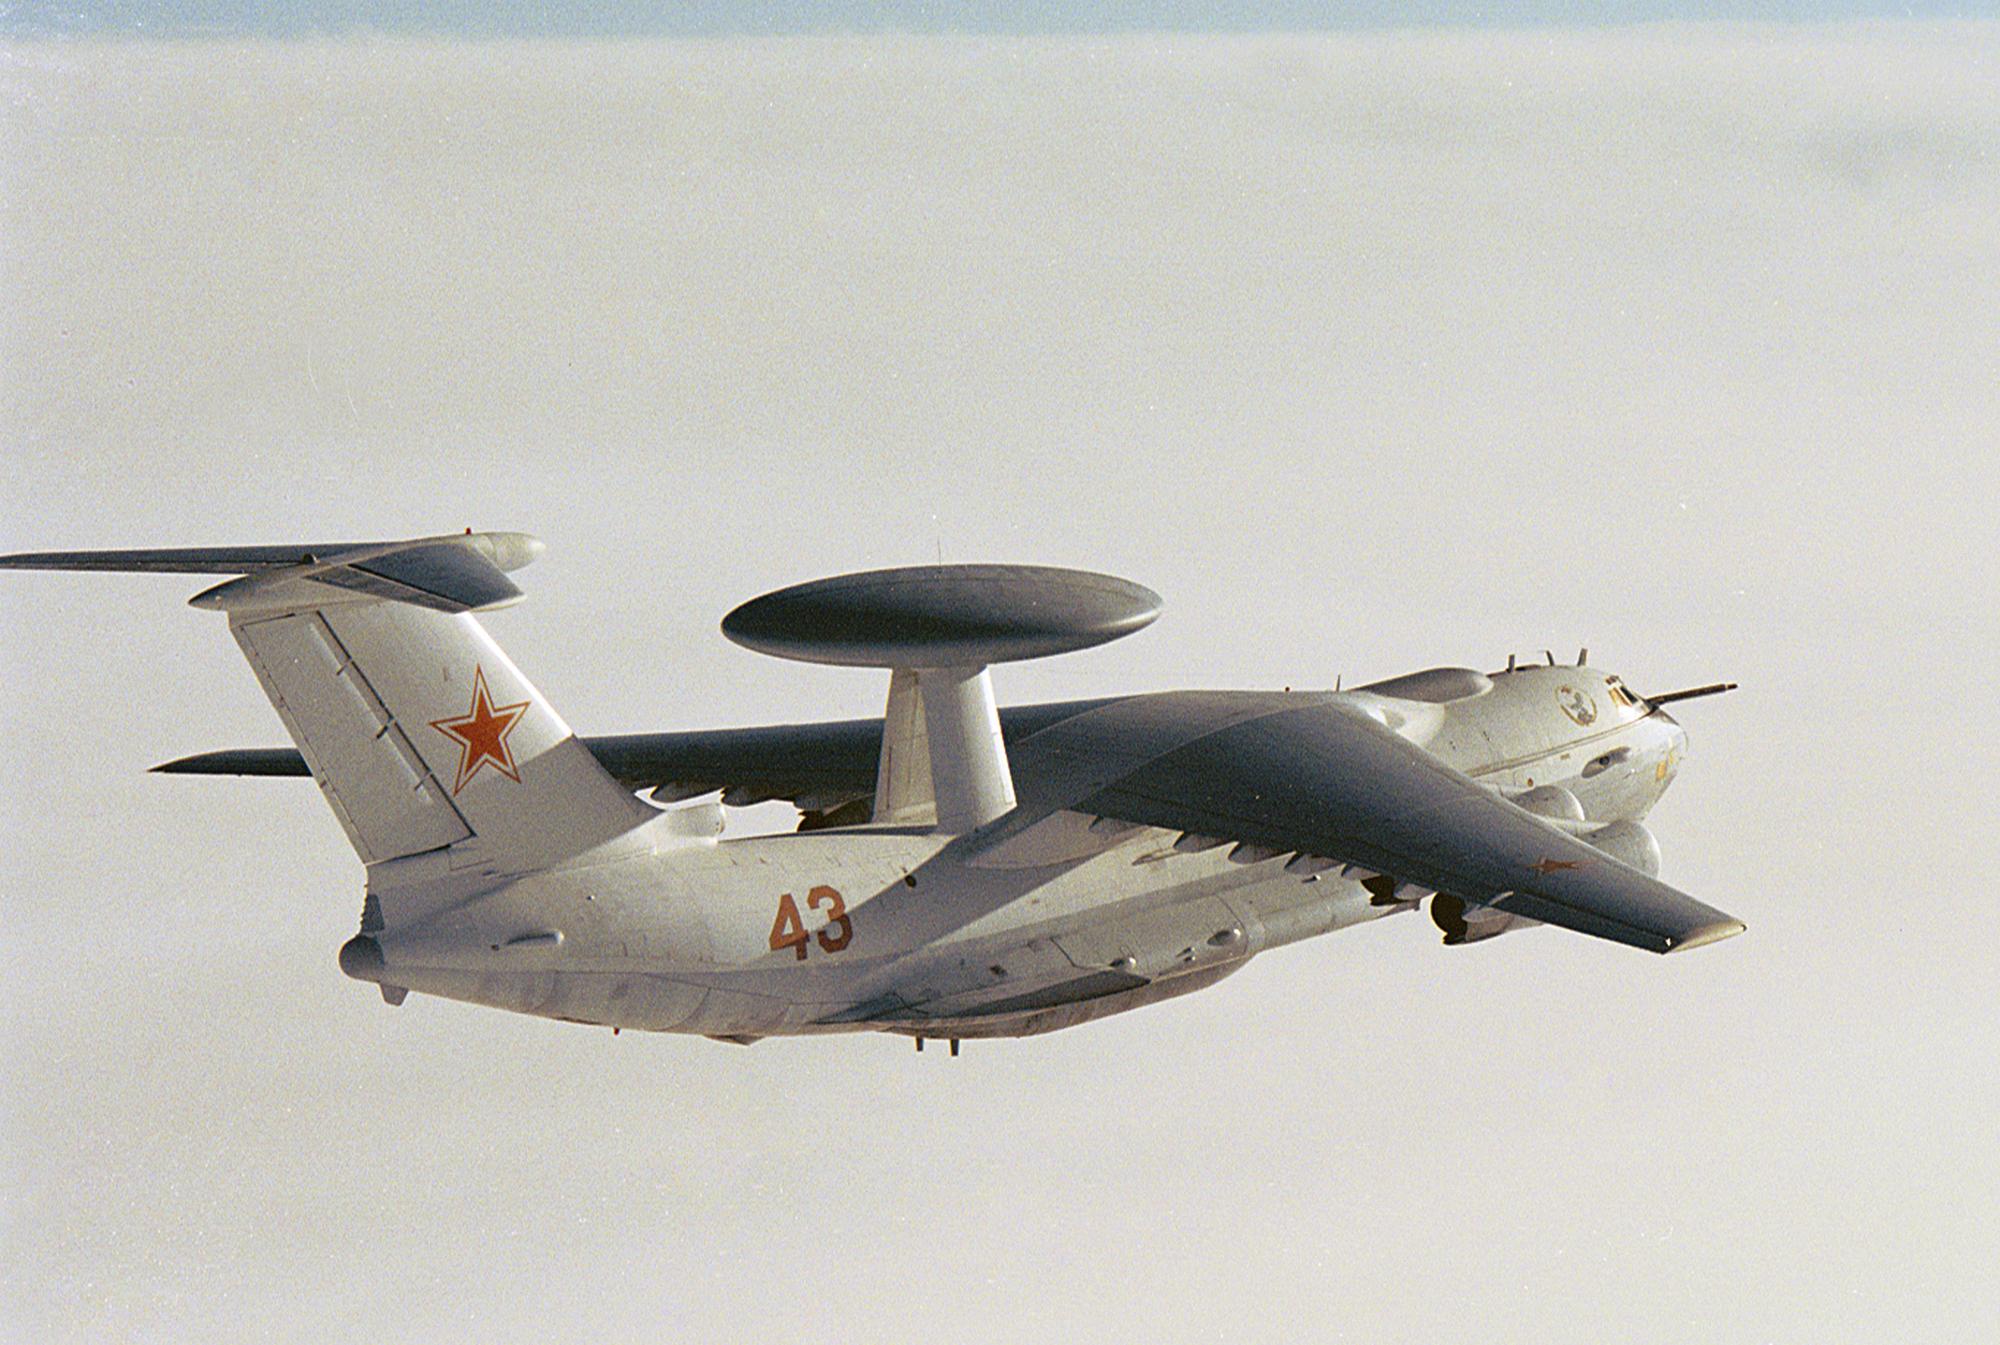 L'avion russe d'alerte avancée A-50. [Reuters]